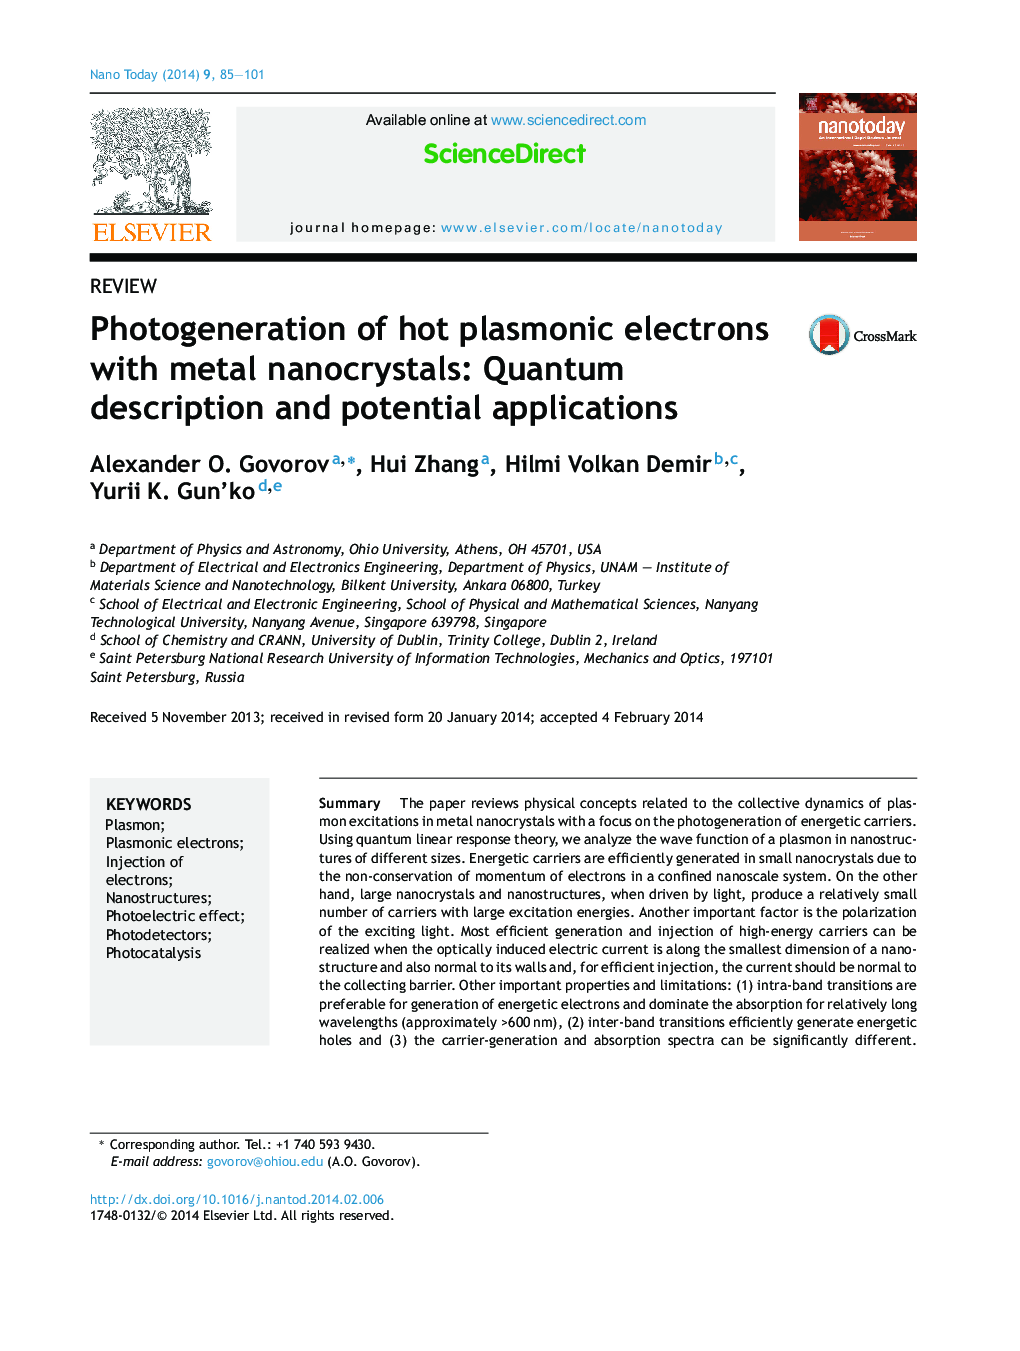 عکسبرداری از الکترونهای پلاسمونی داغ با نانوکریستالهای فلزی: شرح کوانتومی و کاربردهای بالقوه 